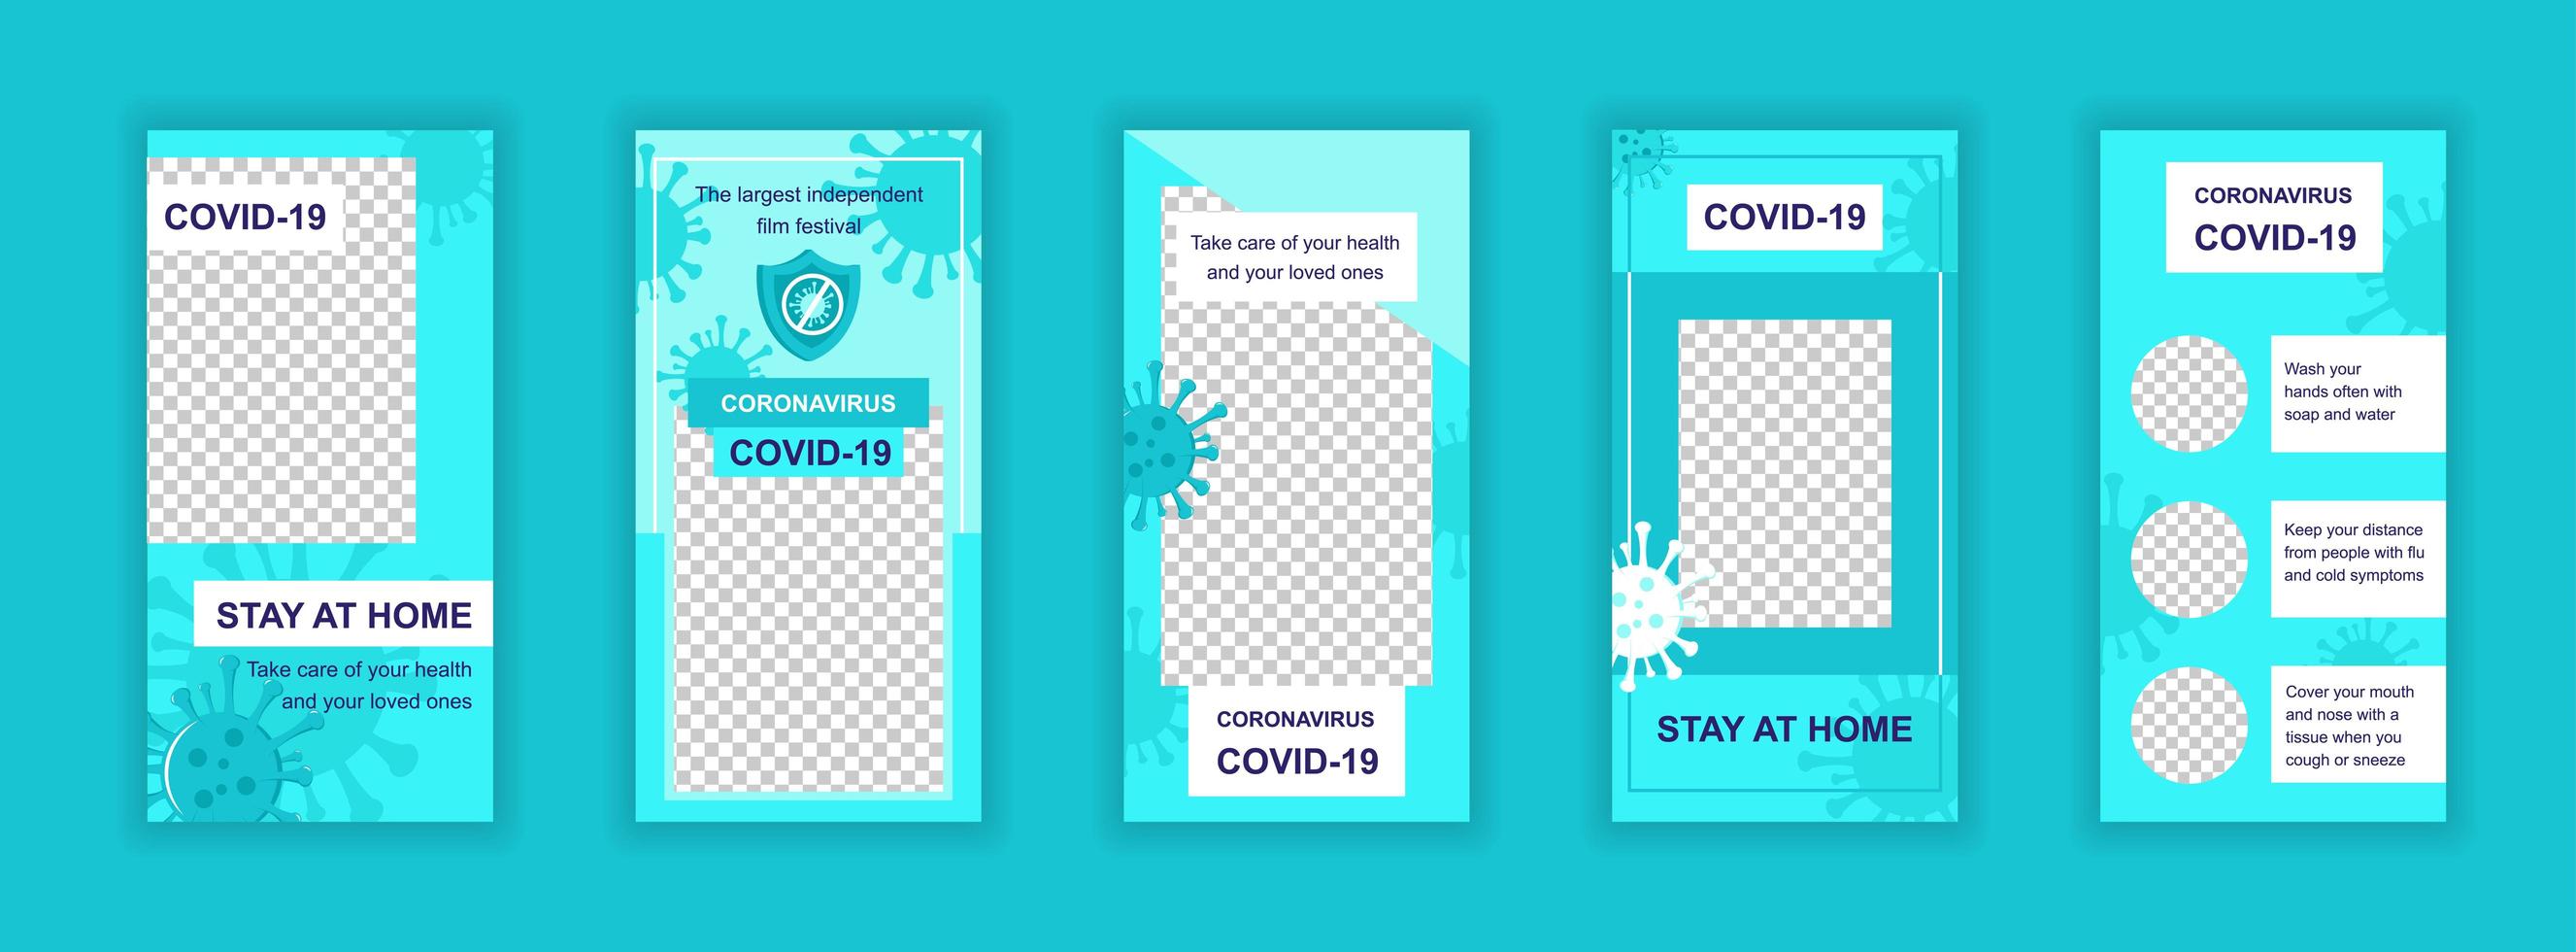 coronavirus covid-19 bewerkbare sjablonen voor sociale media vector